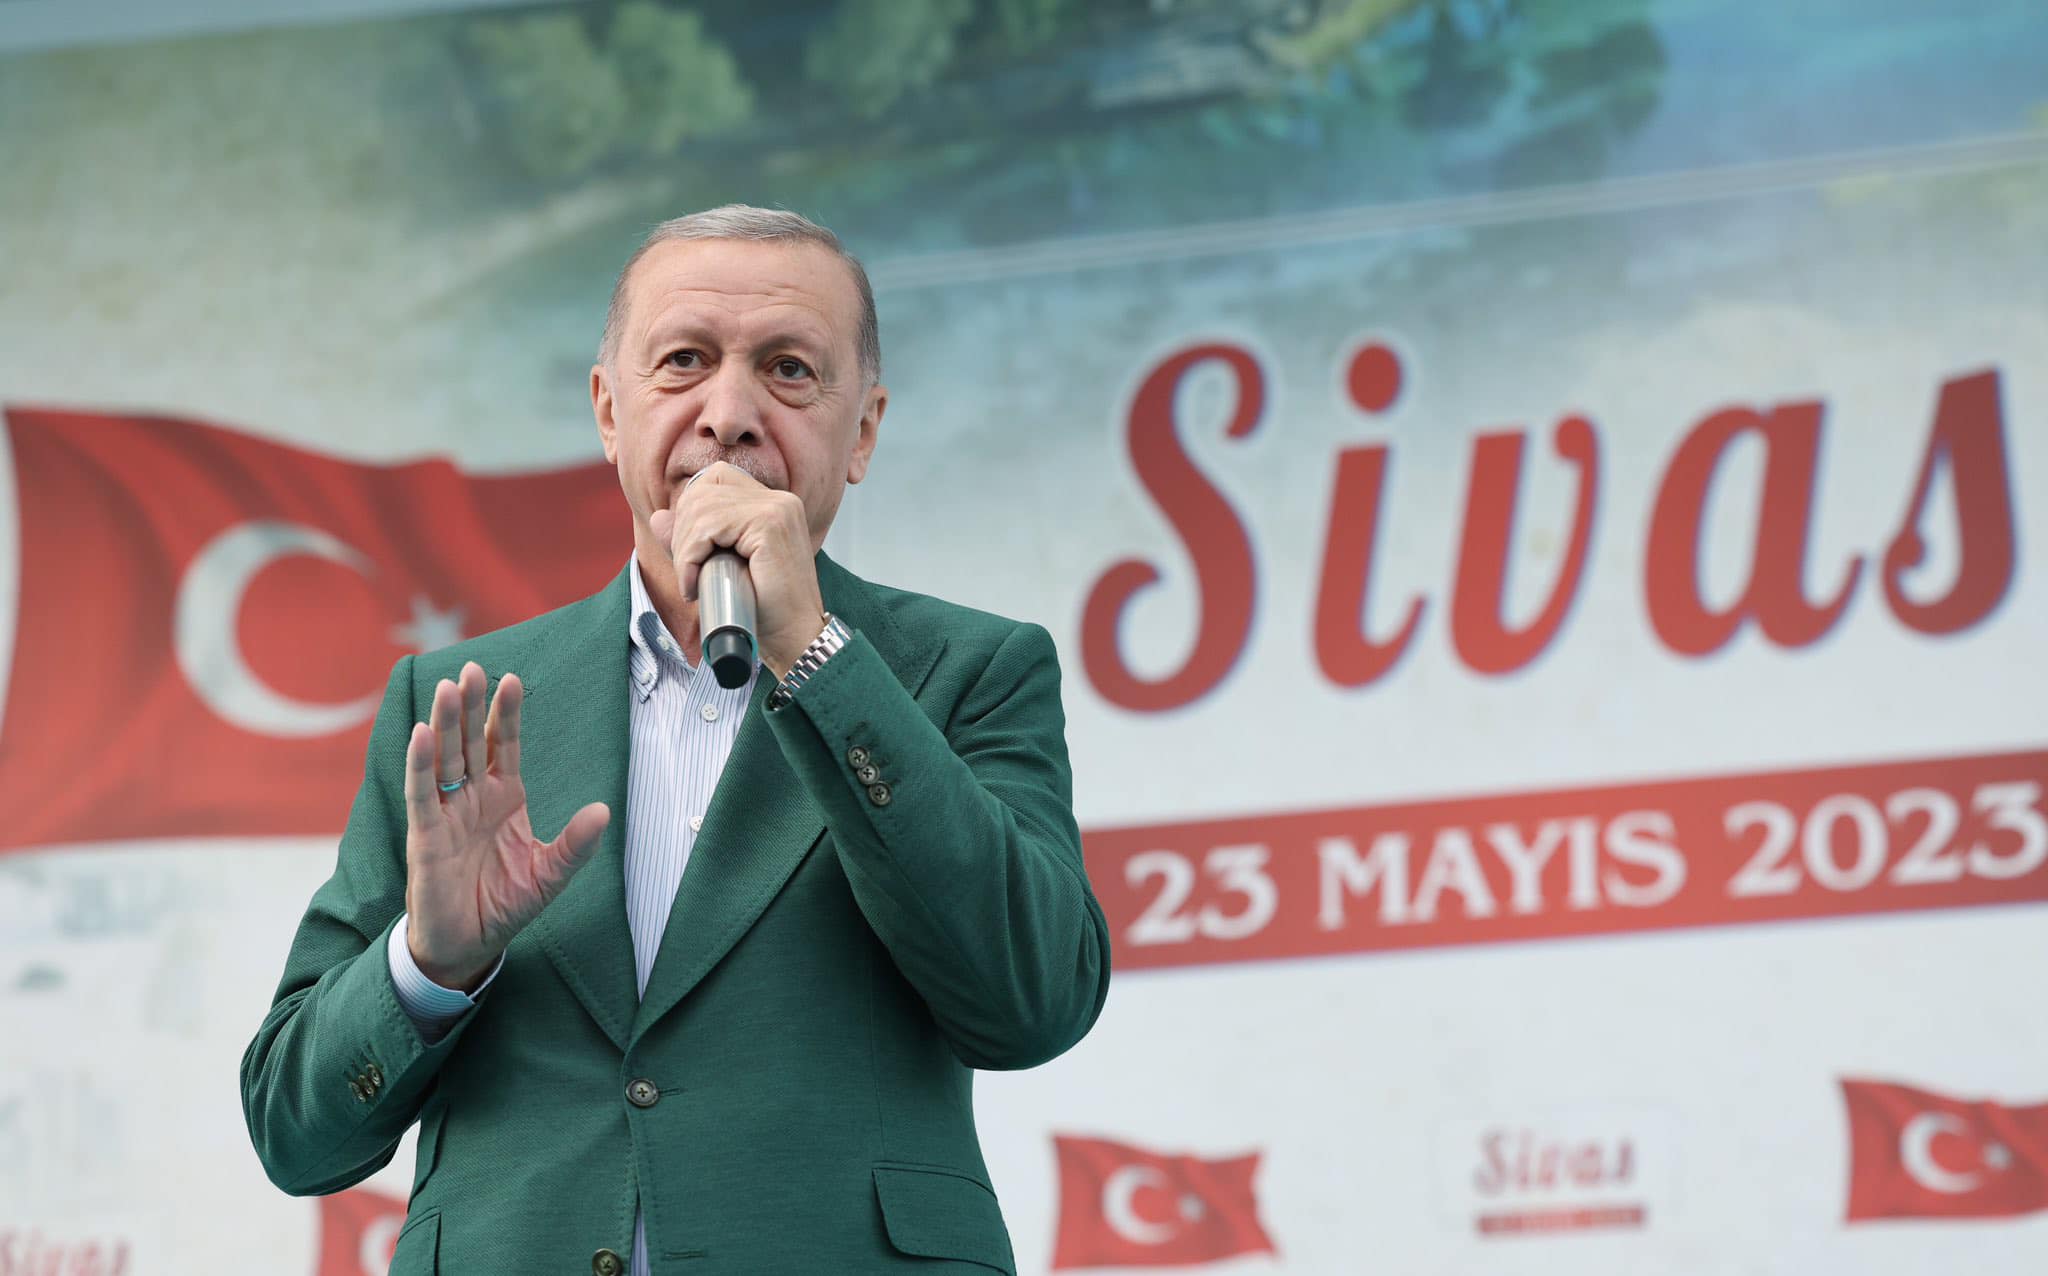 Recep Tayyip Erdoğan“YILLARCA ‘KARA TRENLİ’ TÜRKÜLER SÖYLEYEN SİVAS, BUGÜN YÜKSEK HIZLI TRENİN KONFORUNU YAŞIYOR”